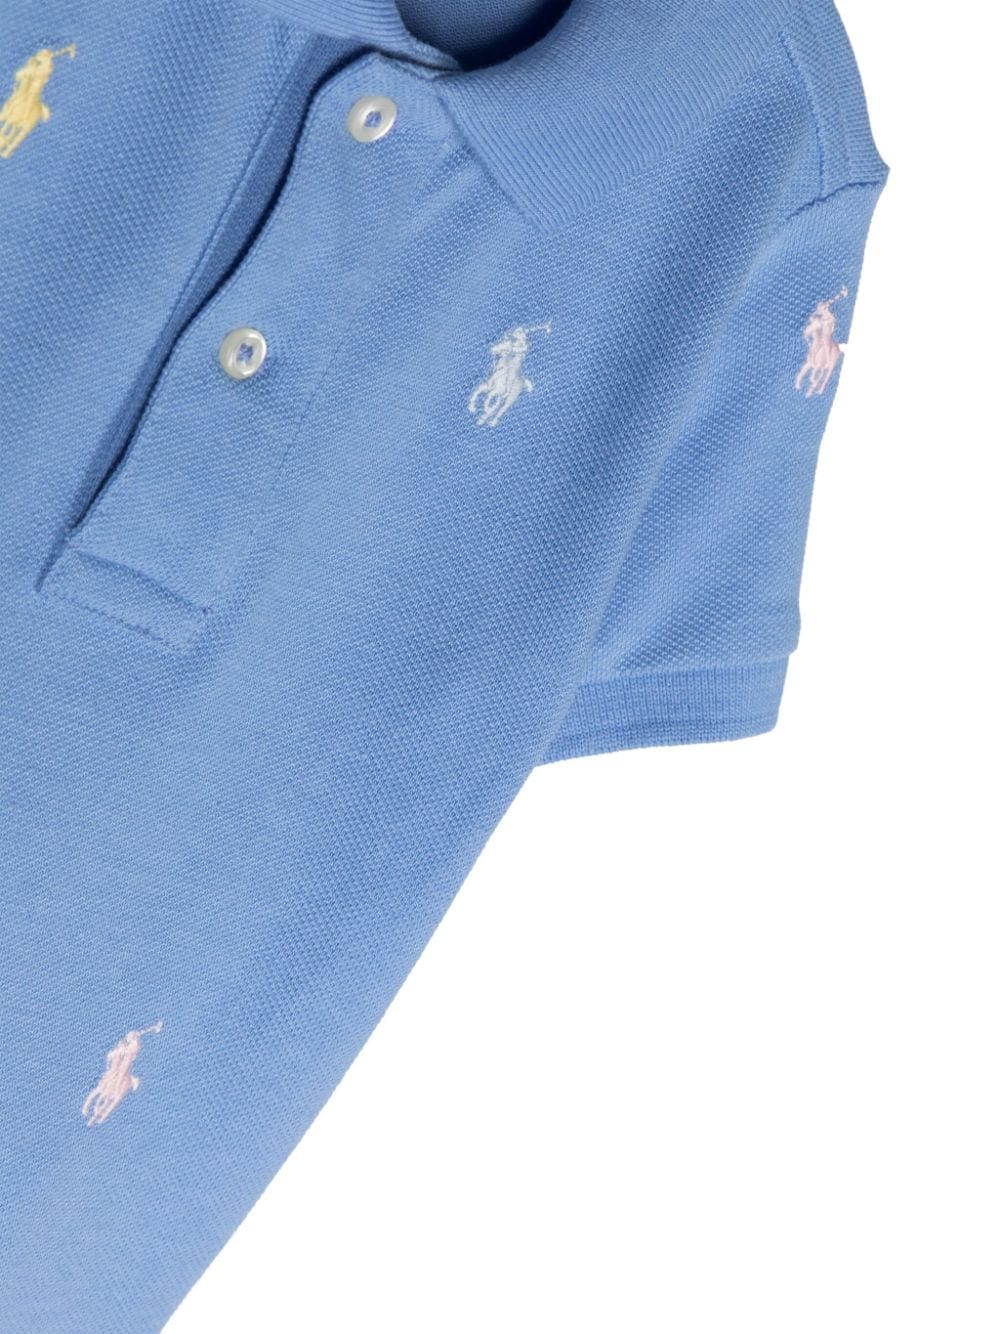 Blue polo shirt for newborns with logo